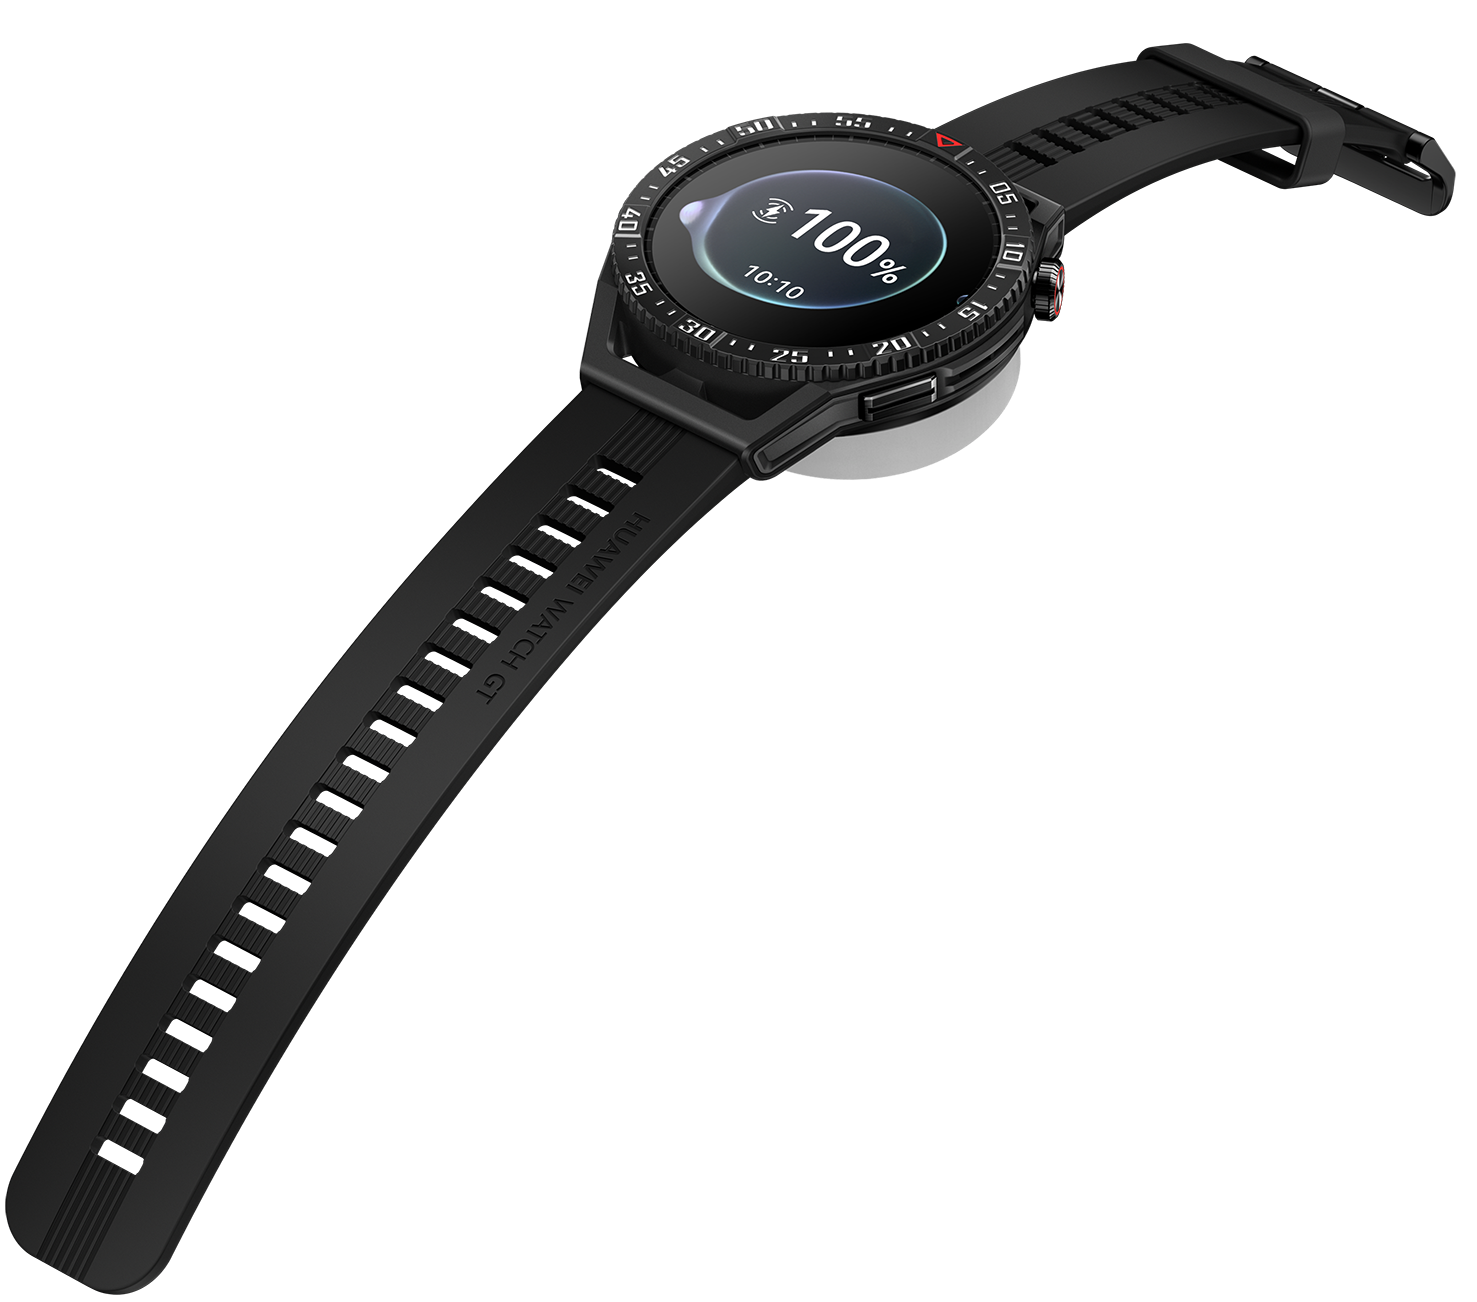 HUAWEI Watch GT 3 a un PREZZO IMPERDIBILE! Solo 159€ per un smartwatch TOP!  - SpazioGames